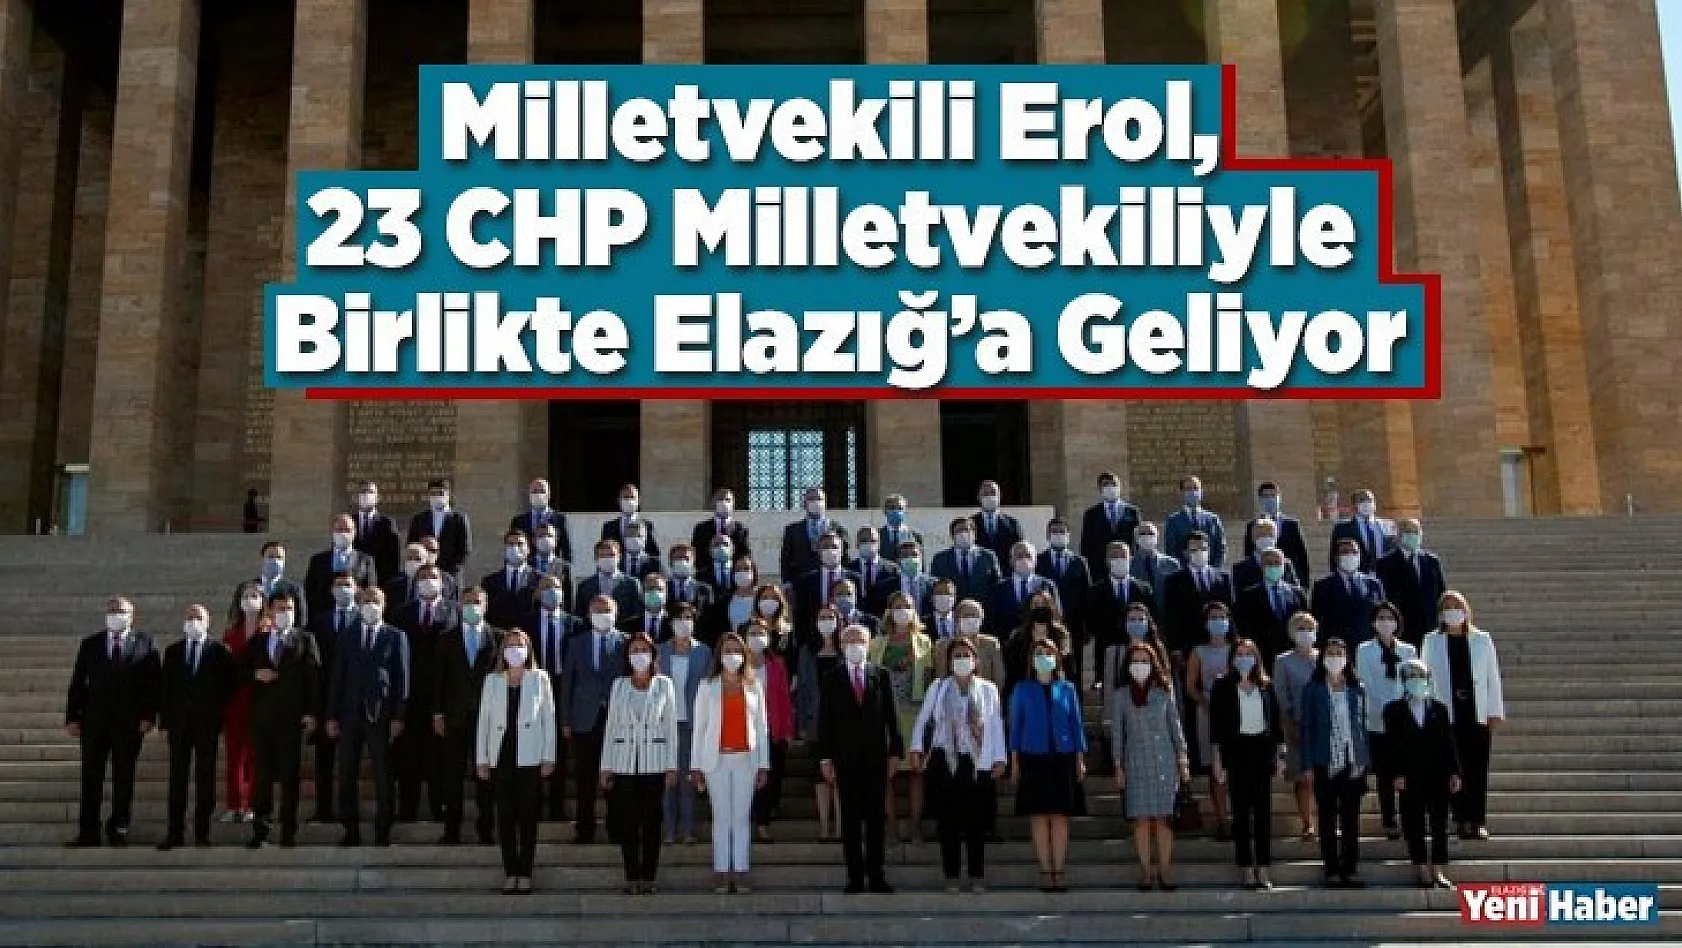 Milletvekili Erol, 23 CHP Milletvekiliyle Birlikte Elazığ'a Geliyor